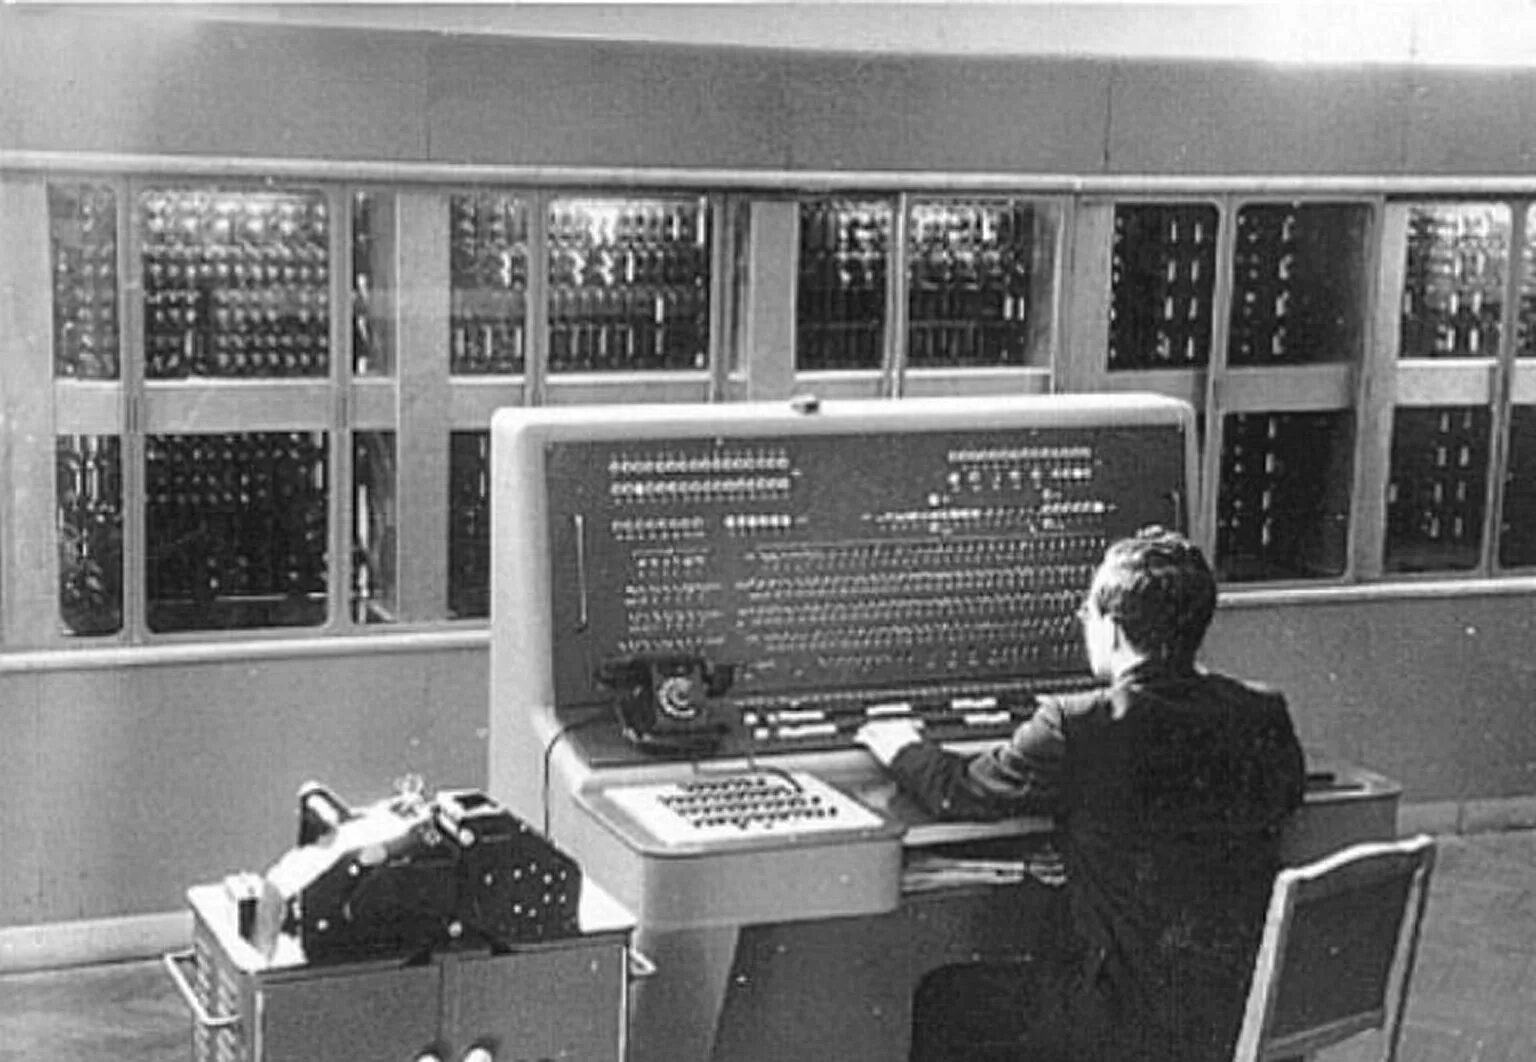 МЭСМ малая электронная счетная машина. ЭВМ МЭСМ Лебедева. Малая электронная счетная машина Лебедева. МЭСМ малая электронная счетная машина 1951 г.